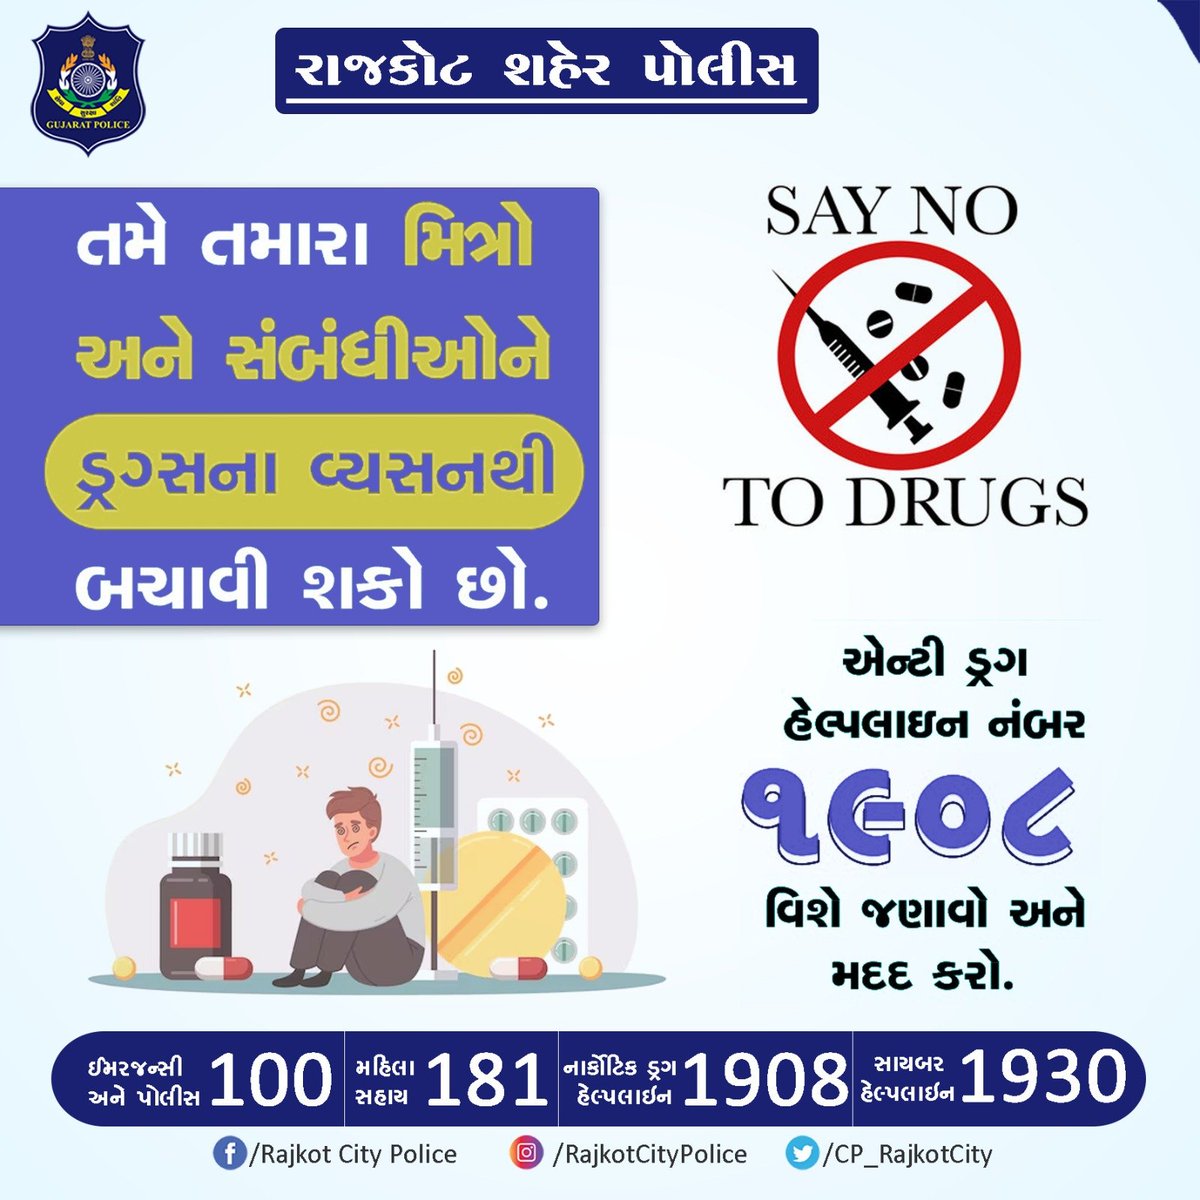 તમે તમારા મિત્રો અને સંબંધીઓને ડ્રગ્સના વ્યસનથી બચાવી શકો છો. #RajkotCityPolice #Rajkot #GujaratPolice #Gujarat #SayNoToDrug #Prohibition #Prohibited @GujaratPolice @dgpgujarat